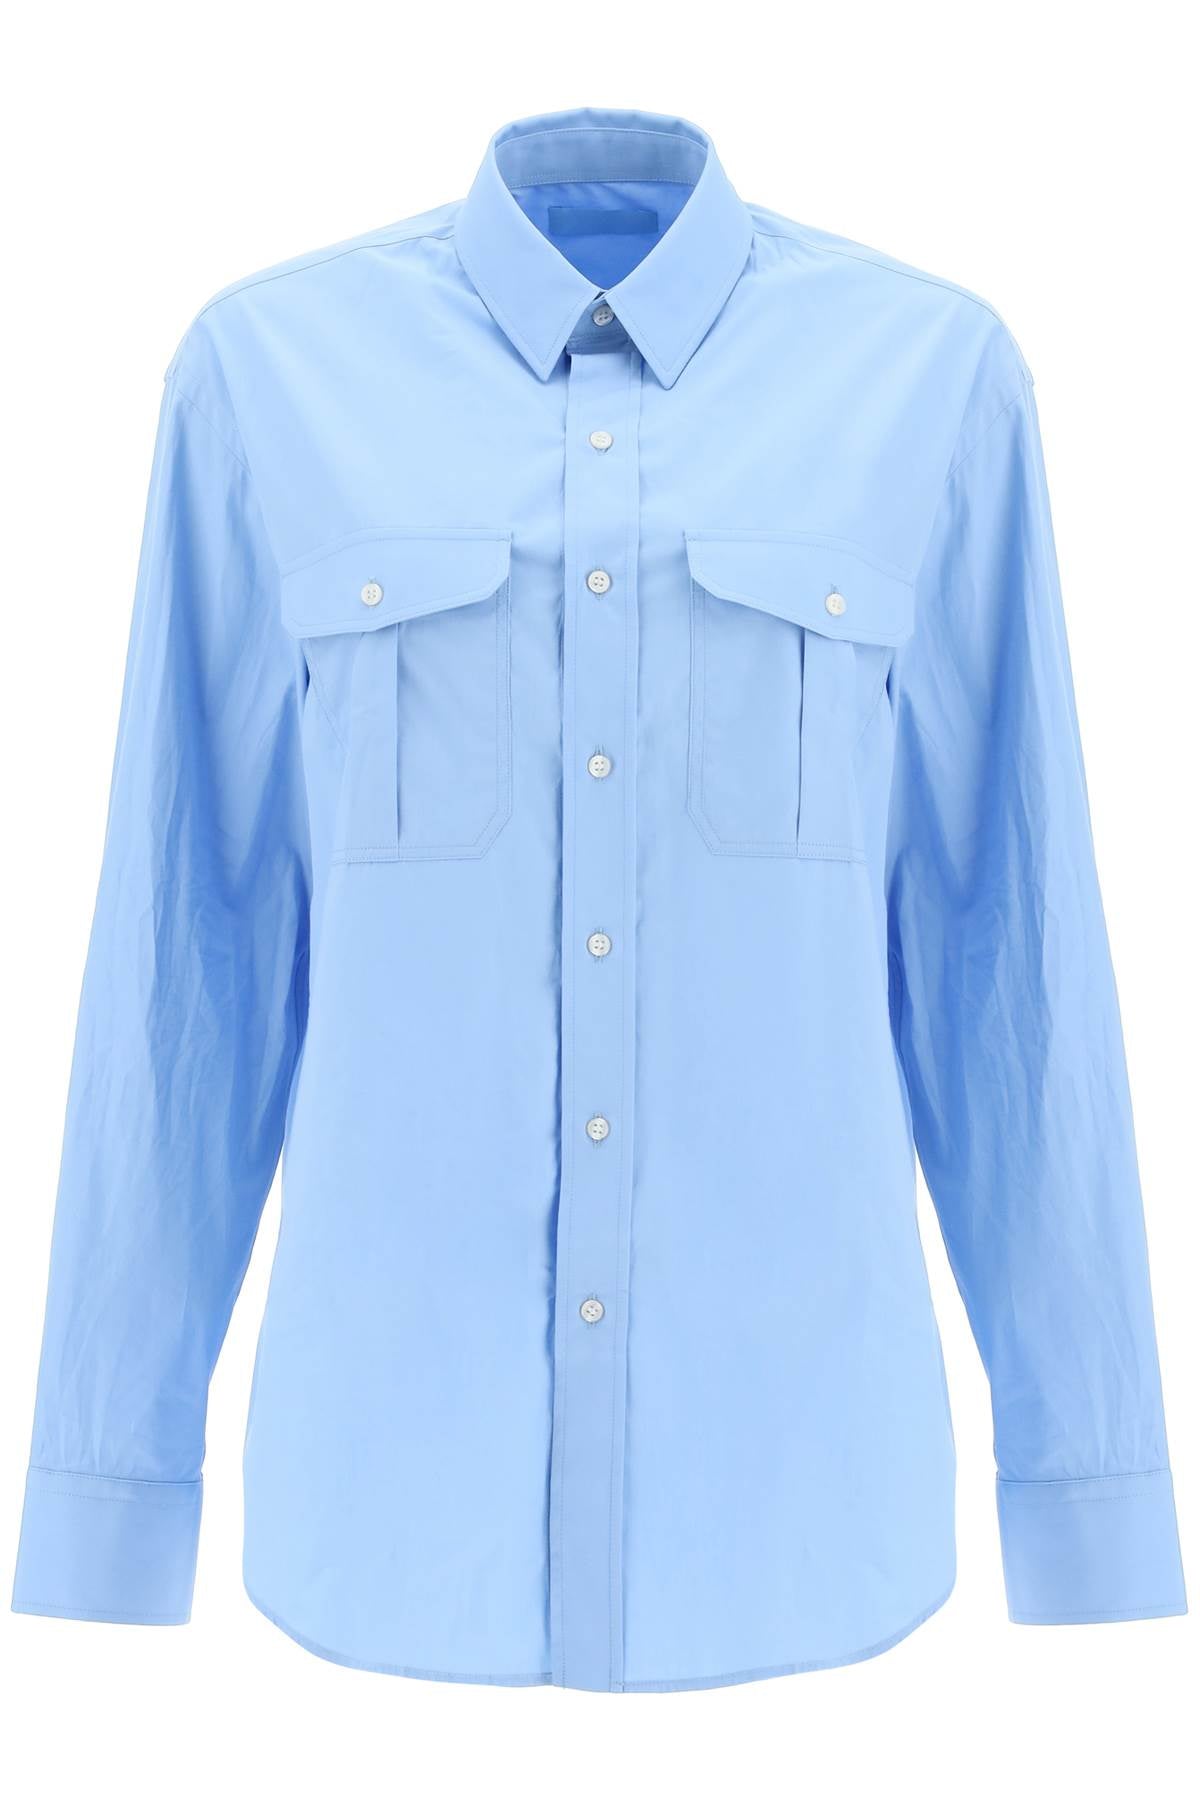 Wardrobe.nyc oversized shirt - Blue-clothing-Wardrobe.Nyc-Urbanheer